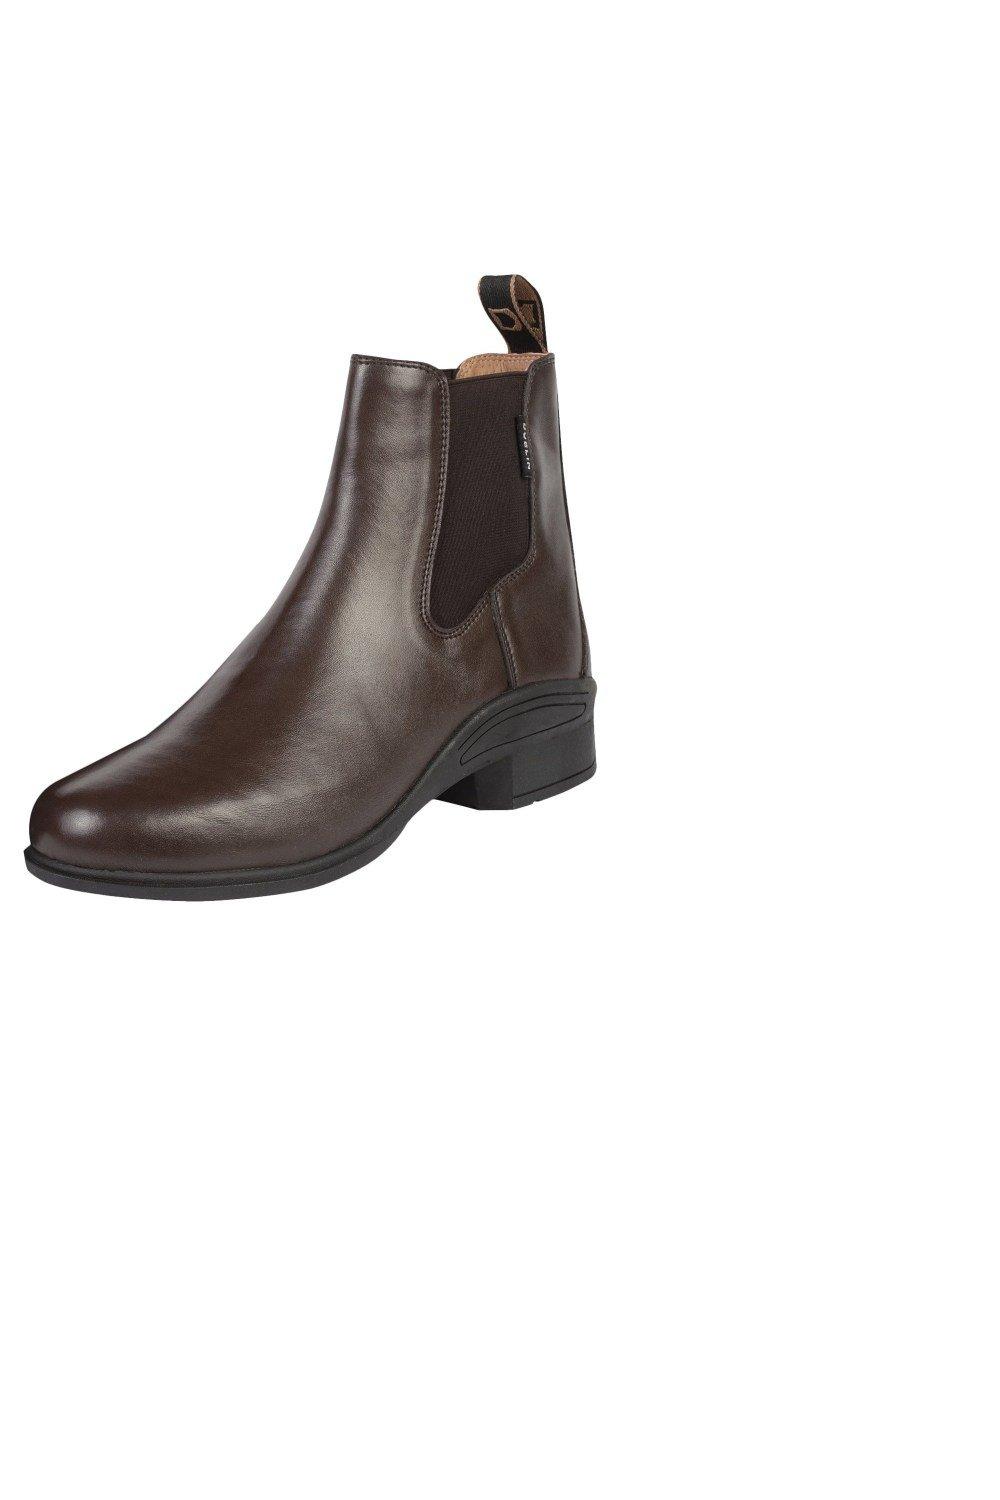 Ботинки Altitude Джодхпур Dublin, коричневый кожаные фундаментные ботинки джодхпур dublin коричневый